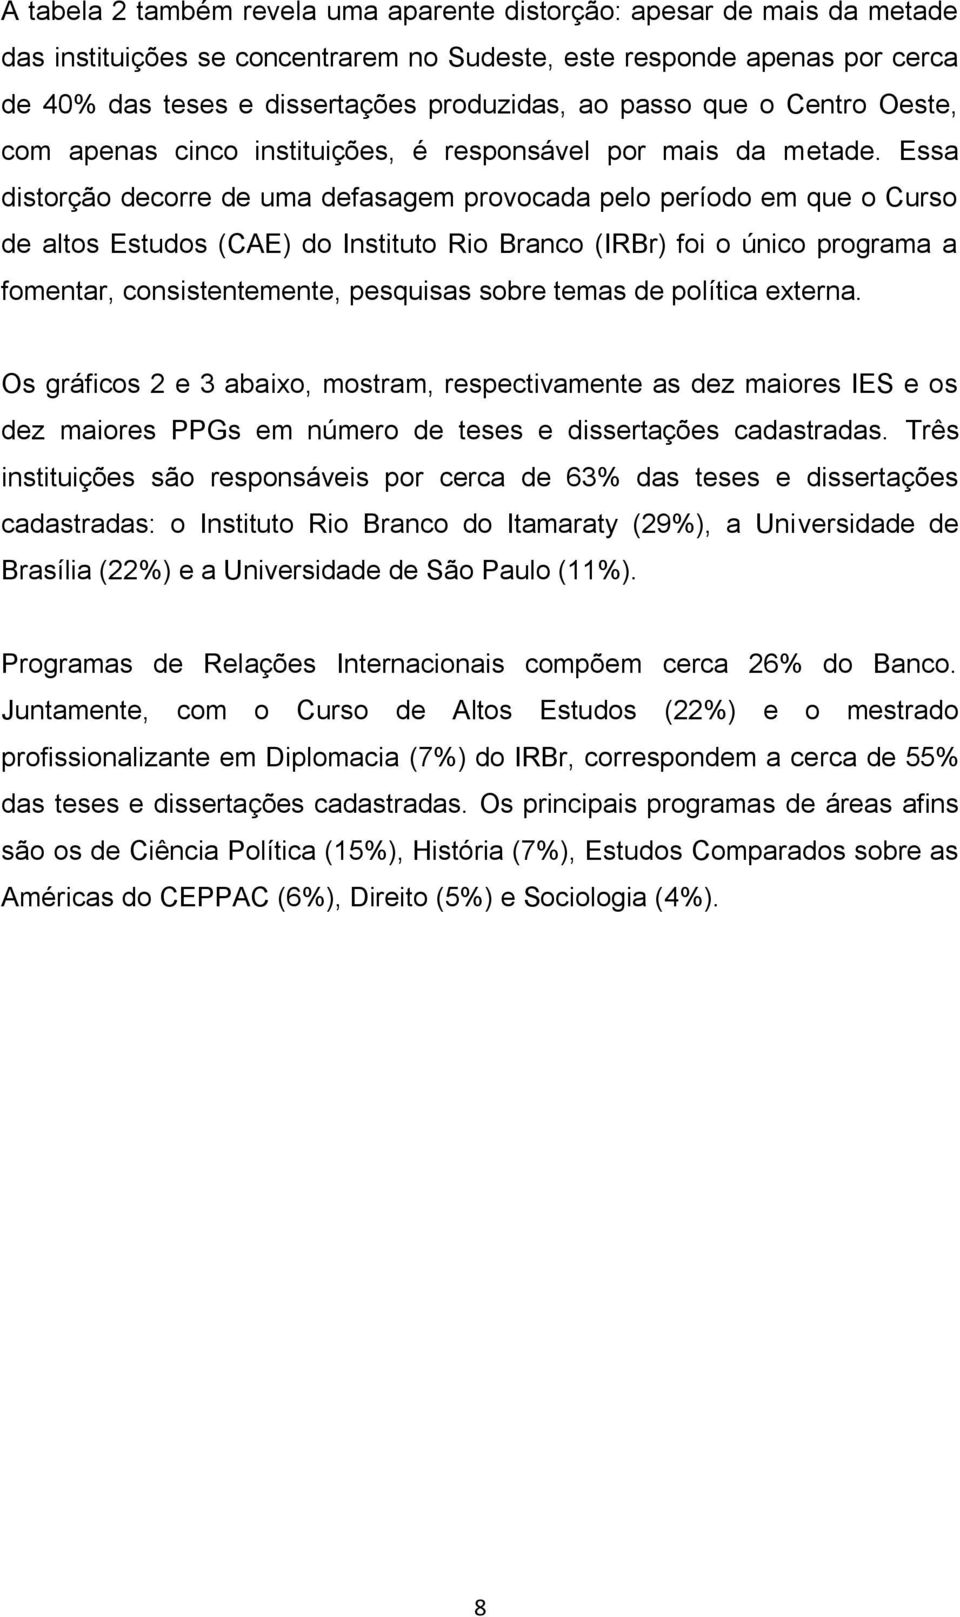 Essa distorção decorre de uma defasagem provocada pelo período em que o Curso de altos Estudos (CAE) do Instituto Rio Branco (IRBr) foi o único programa a fomentar, consistentemente, pesquisas sobre